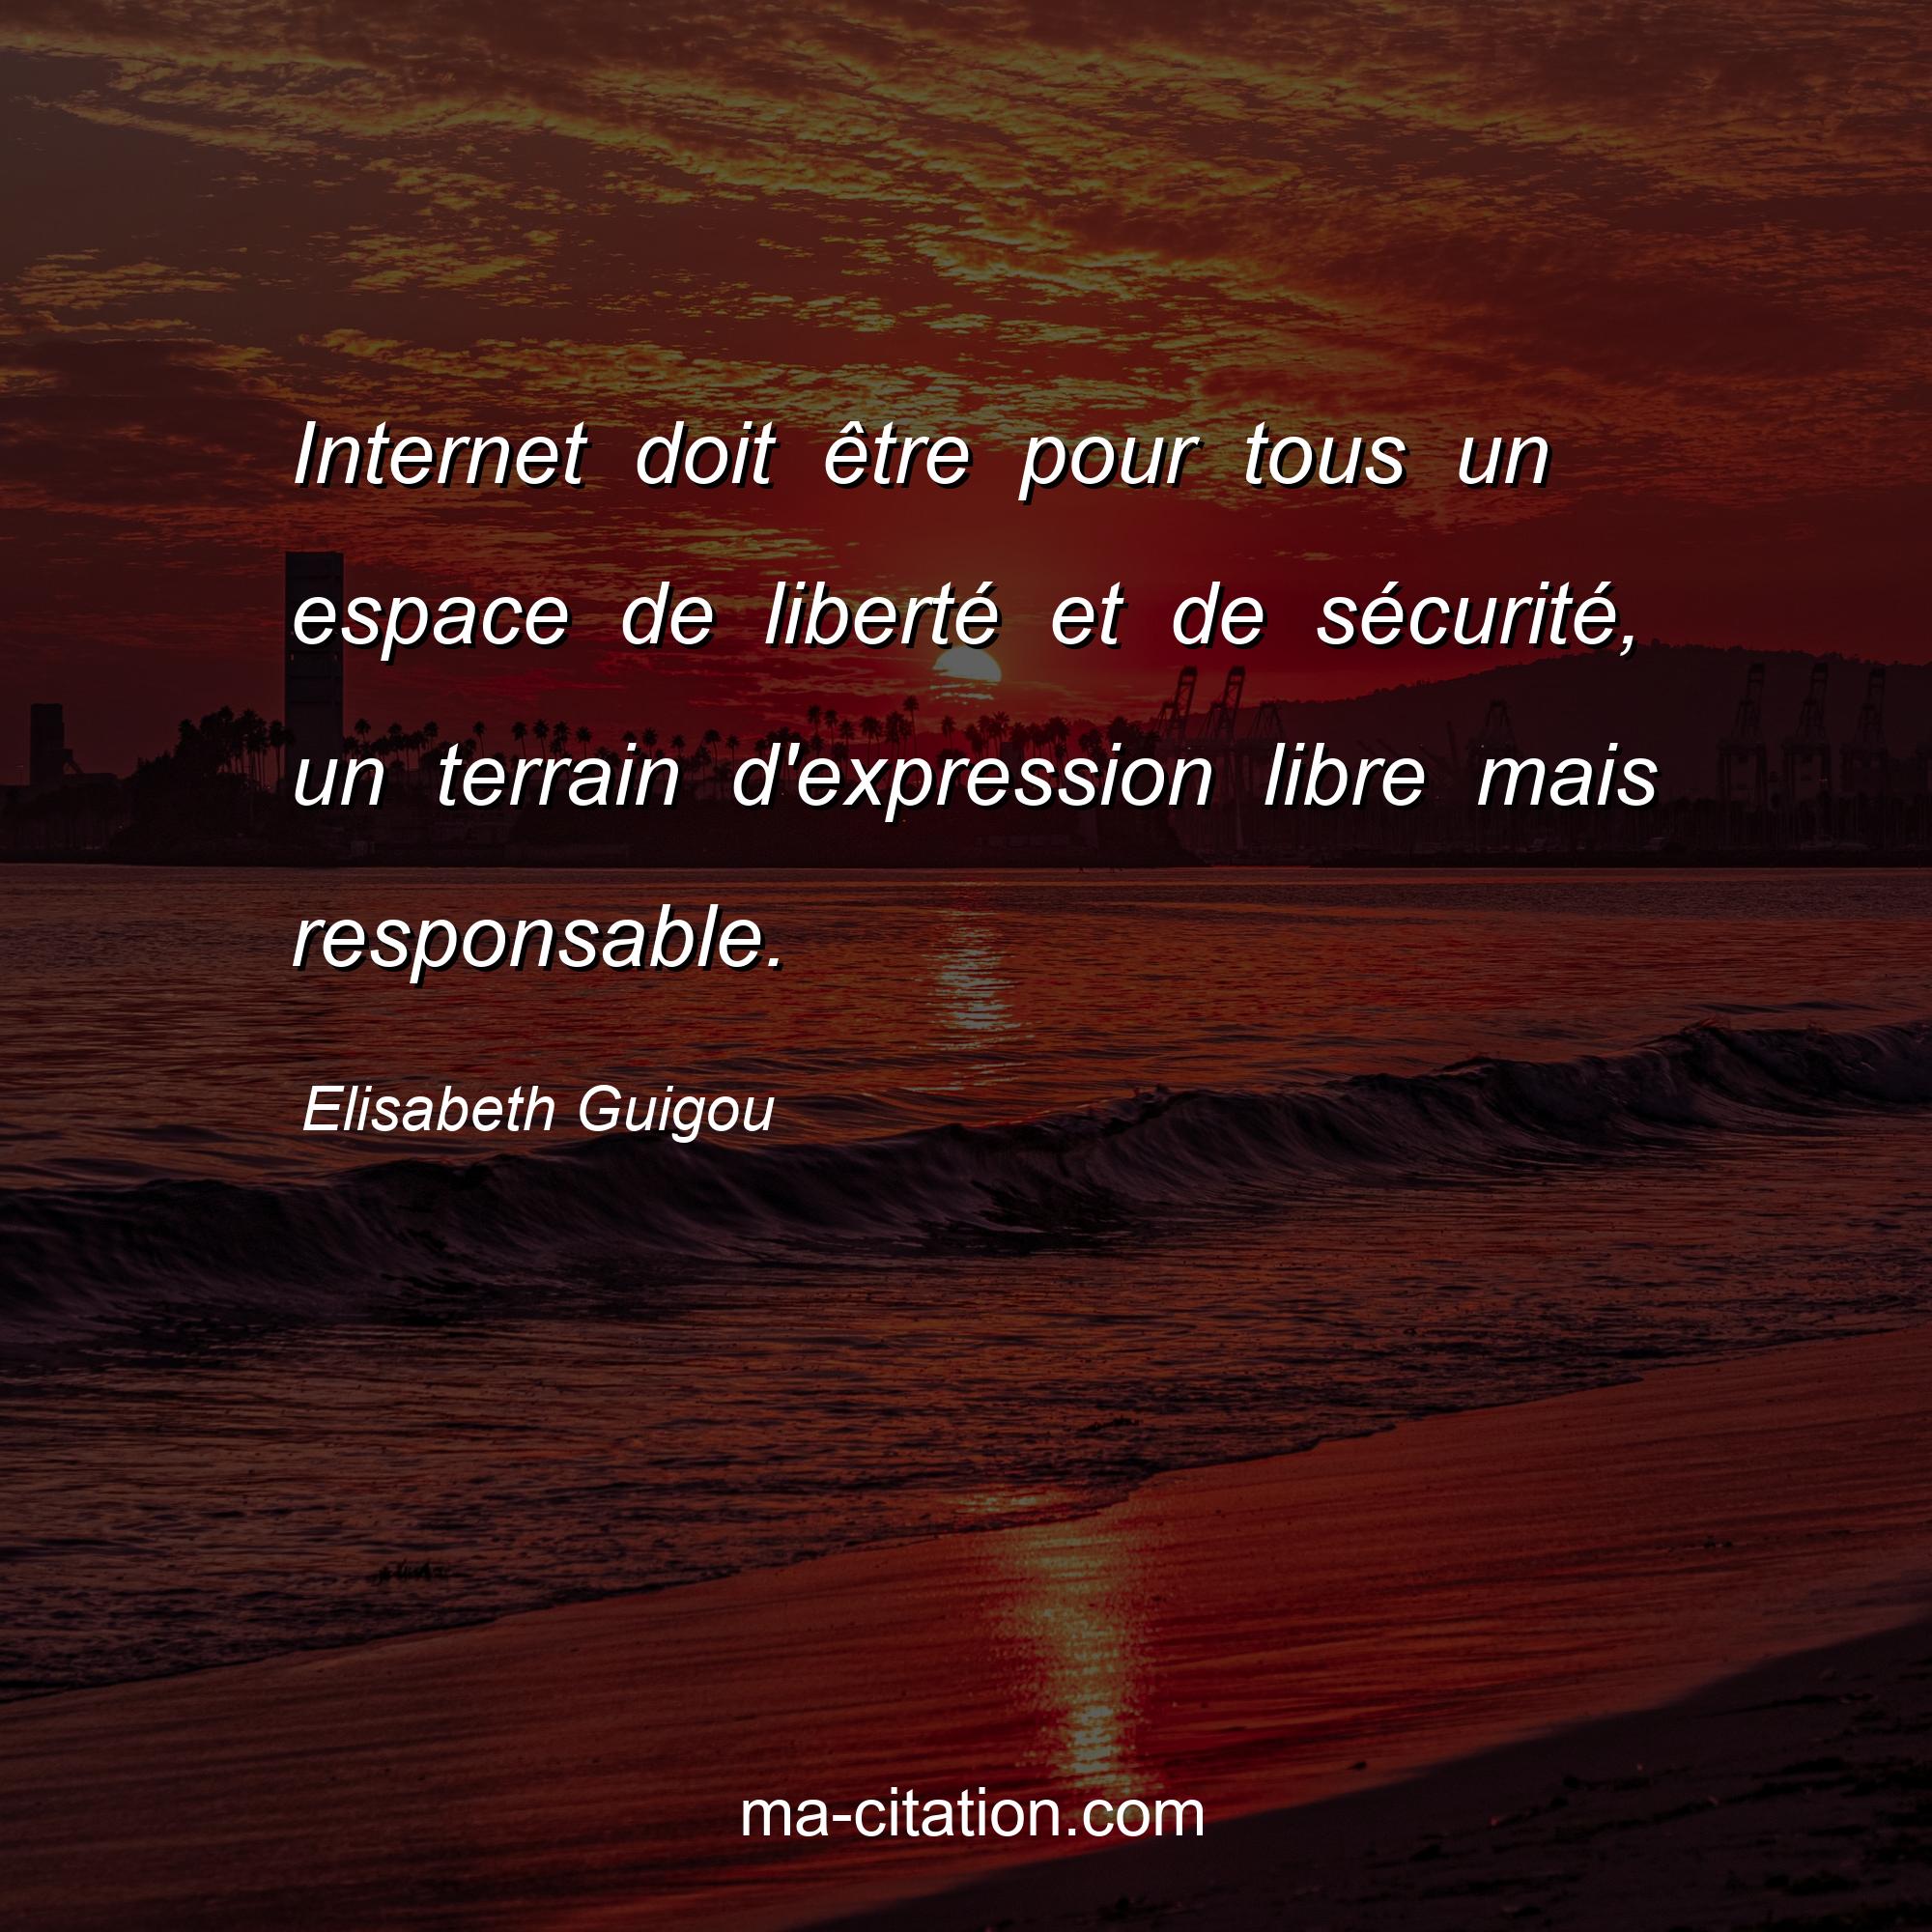 Elisabeth Guigou : Internet doit être pour tous un espace de liberté et de sécurité, un terrain d'expression libre mais responsable.